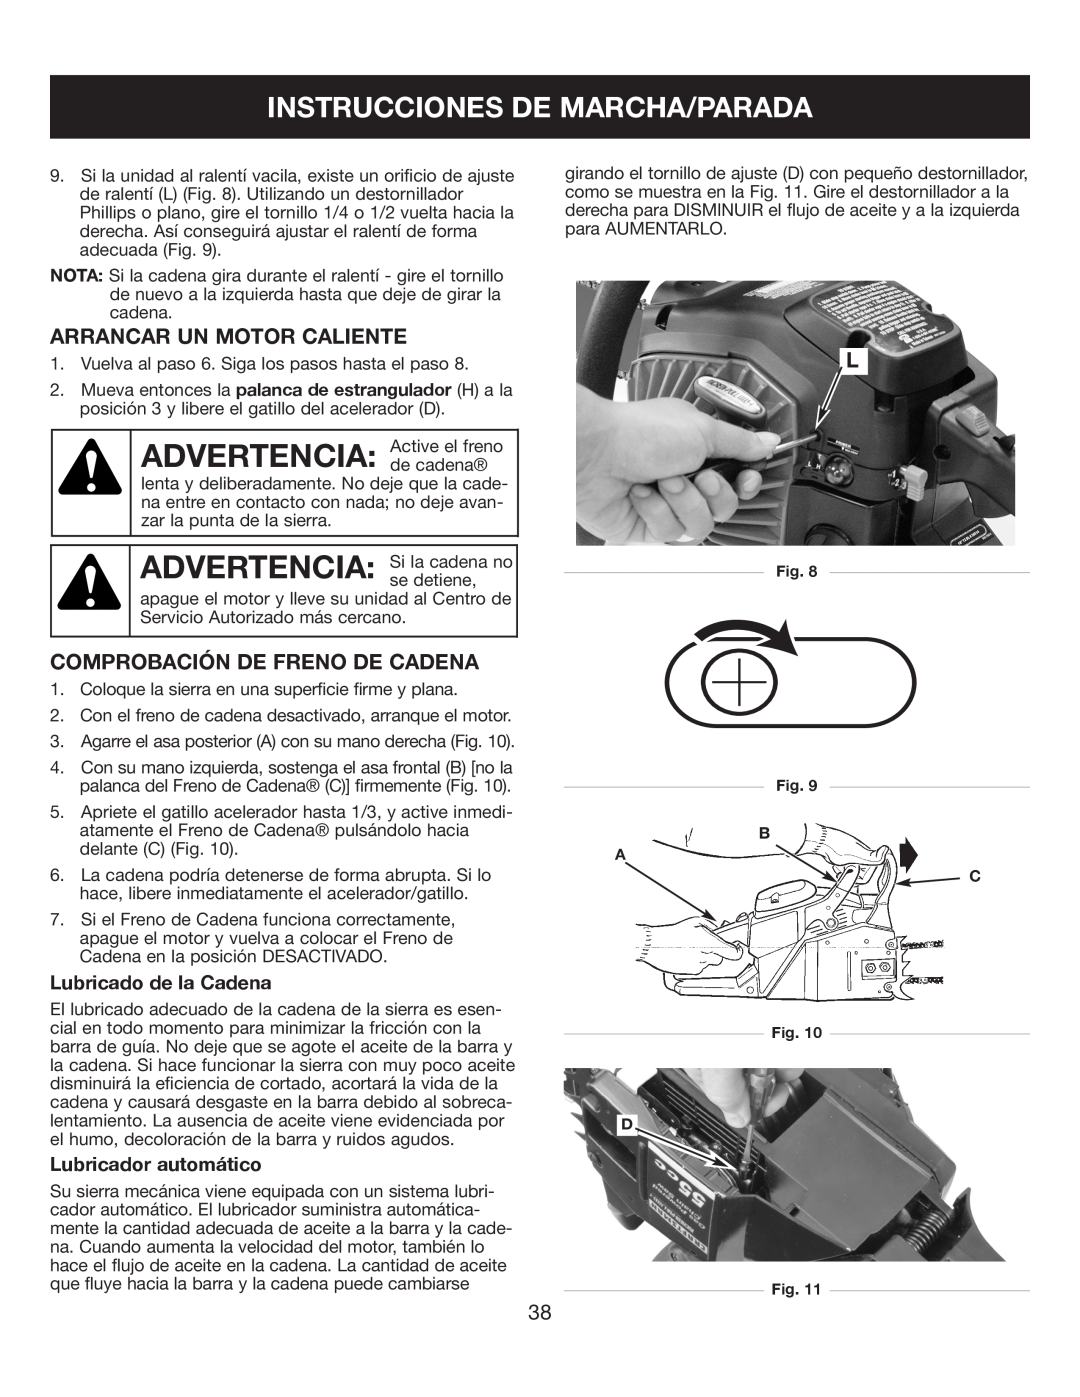 Sears 316.35084 manual Instrucciones De Marcha/Parada, Arrancar Un Motor Caliente, Comprobación De Freno De Cadena 